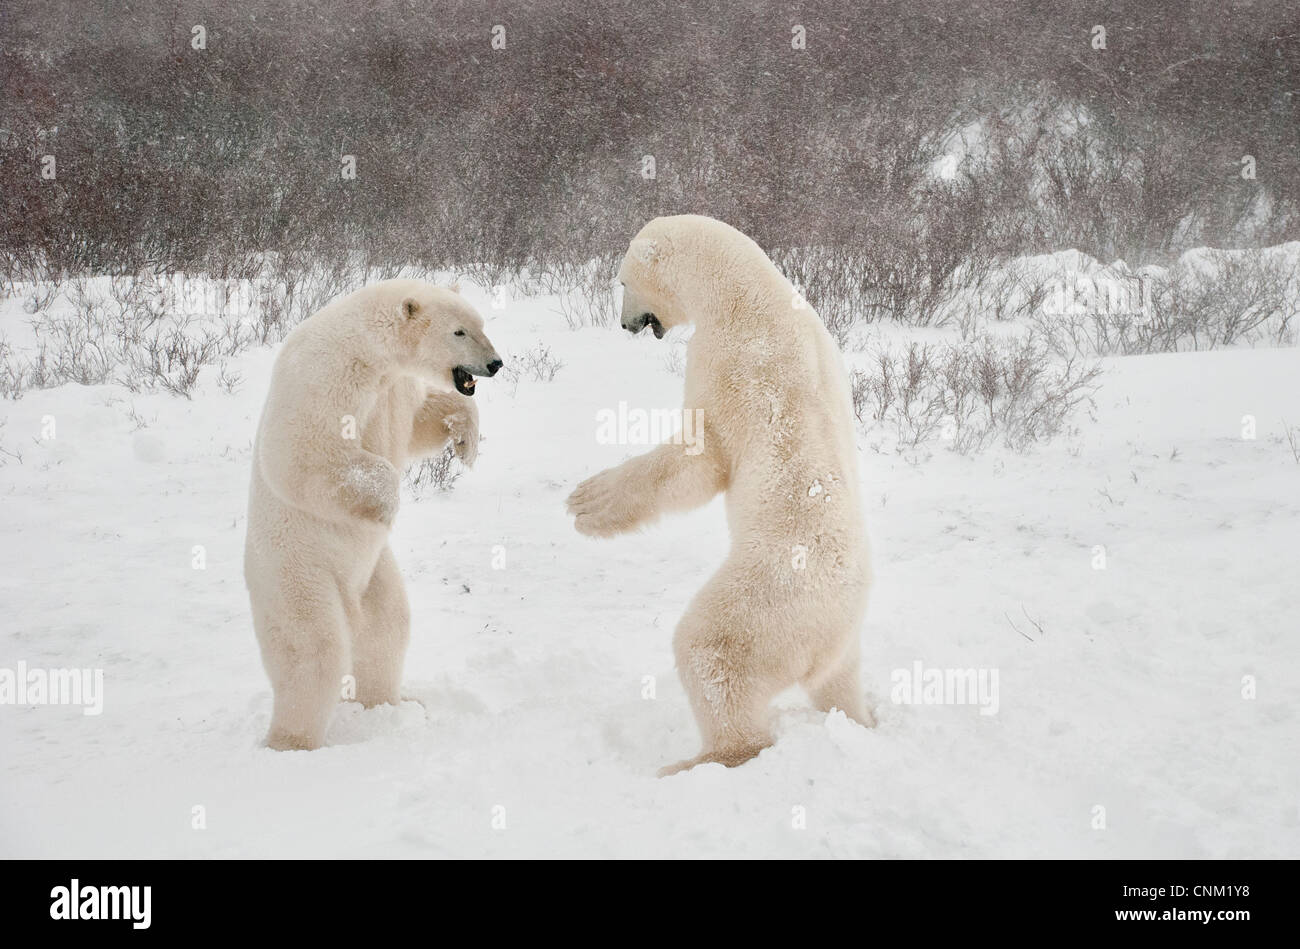 Eisbären, Ursus Maritimus, spielen, kämpfen, Wapusk-Nationalpark, in der Nähe von Hudson Bay, Cape Churchill, Manitoba, Kanada Stockfoto